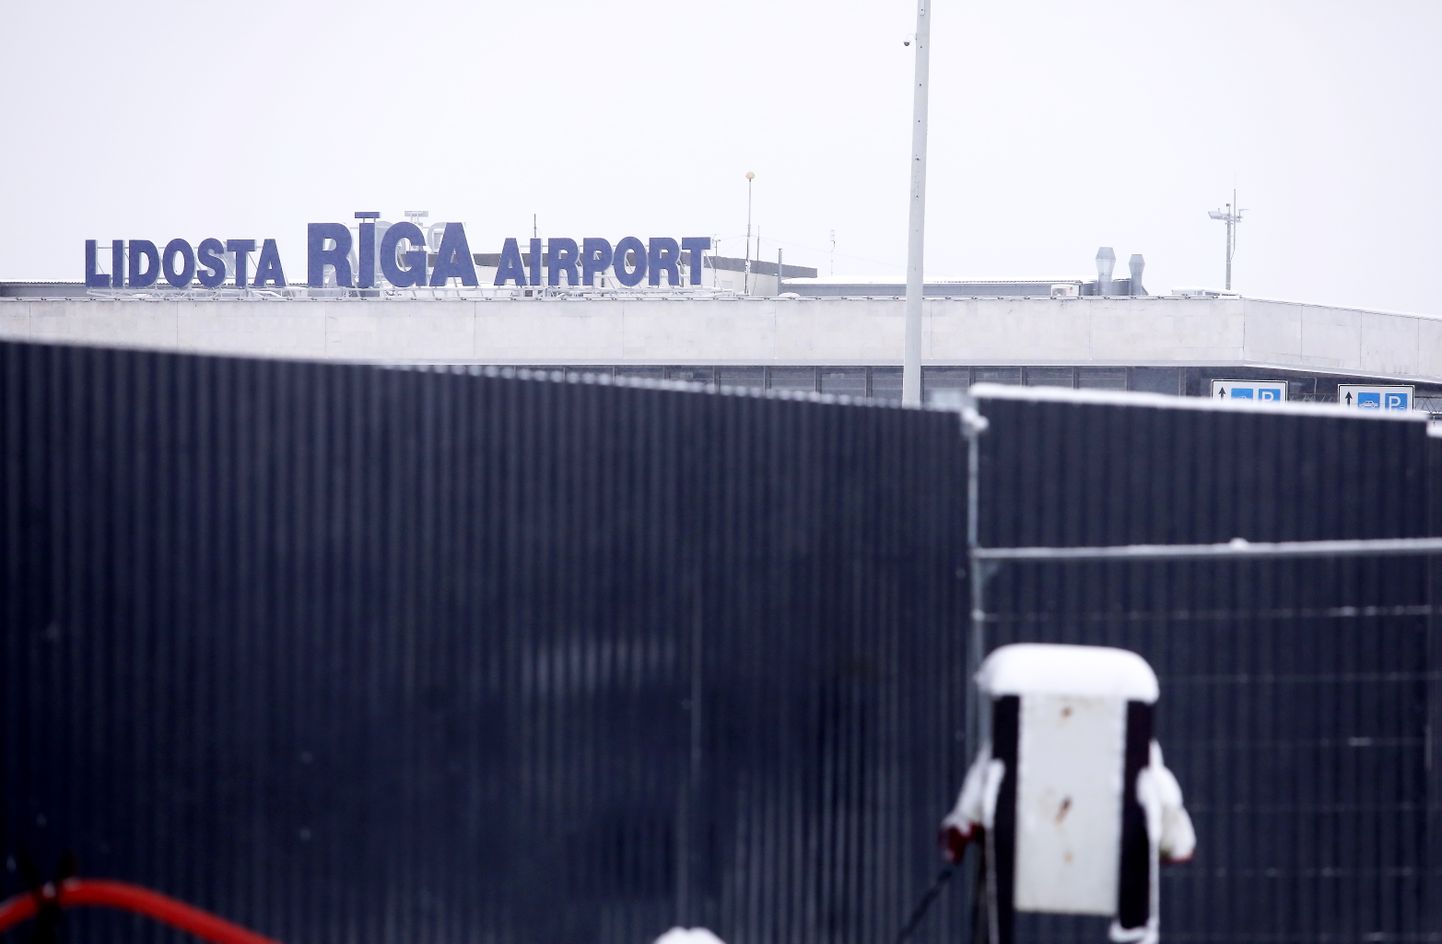 Starptautiskā lidosta "Rīga".